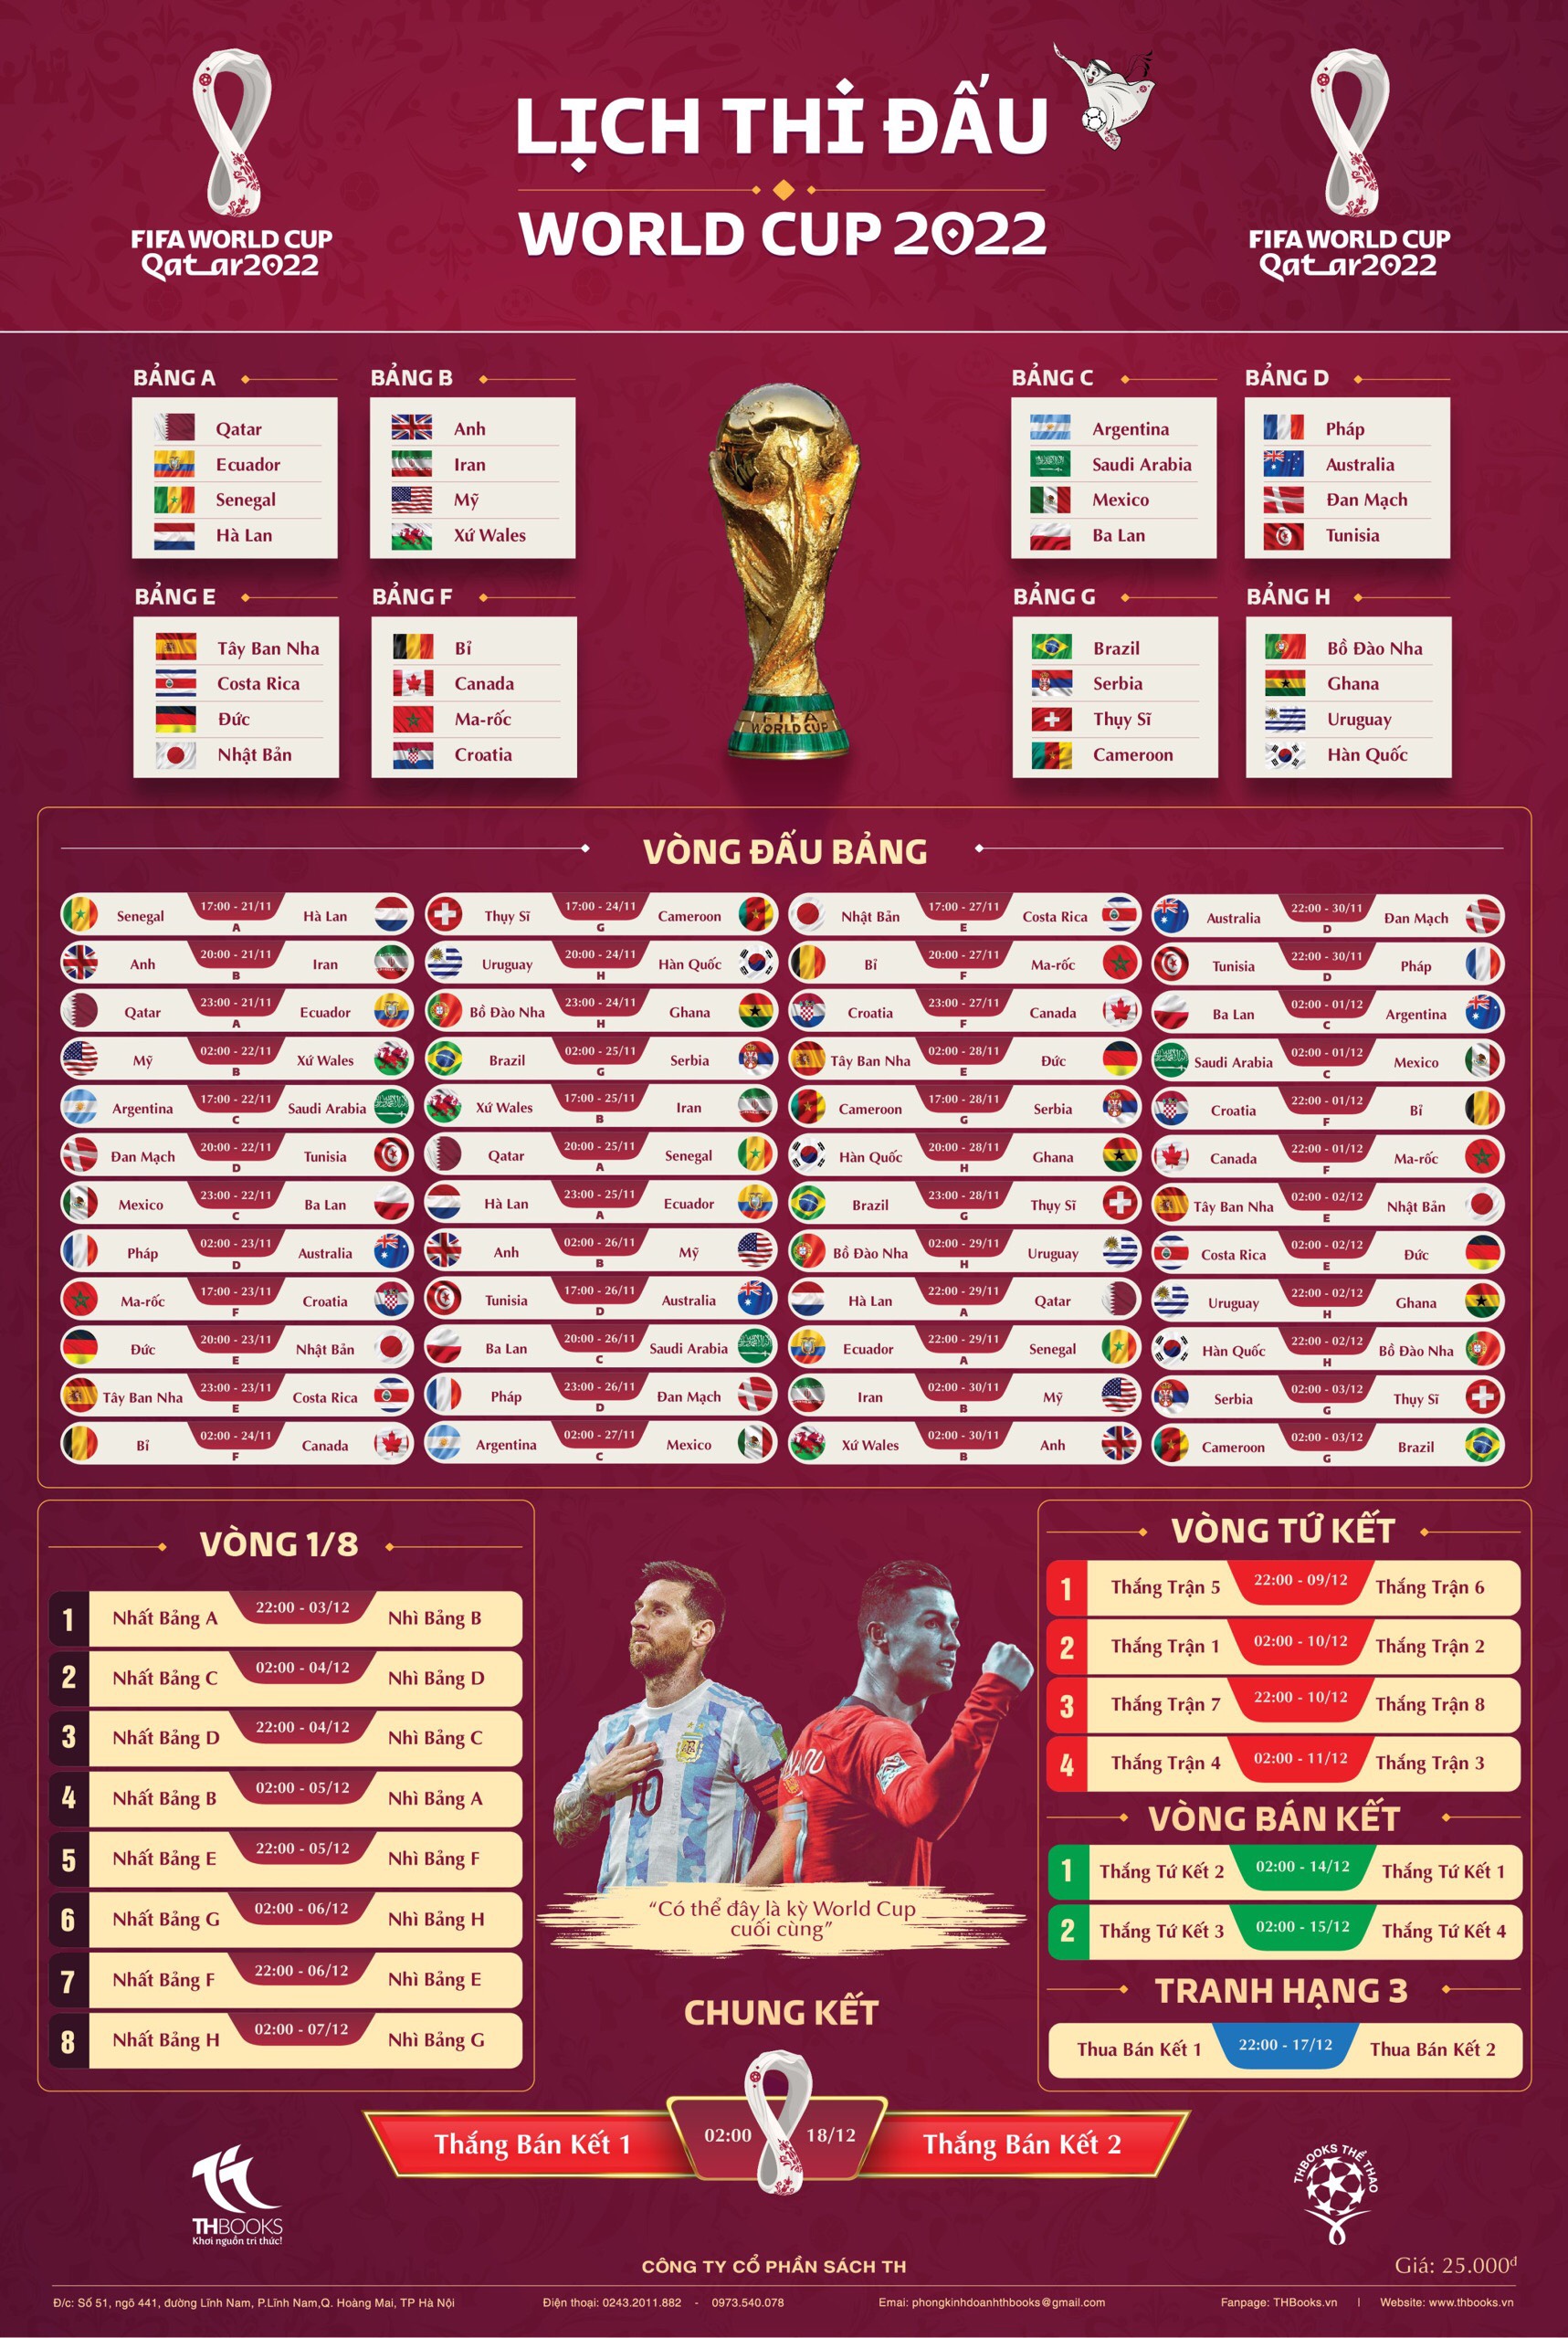 Lịch thi đấu World Cup 2022 chi tiết (Theo giờ Việt Nam)